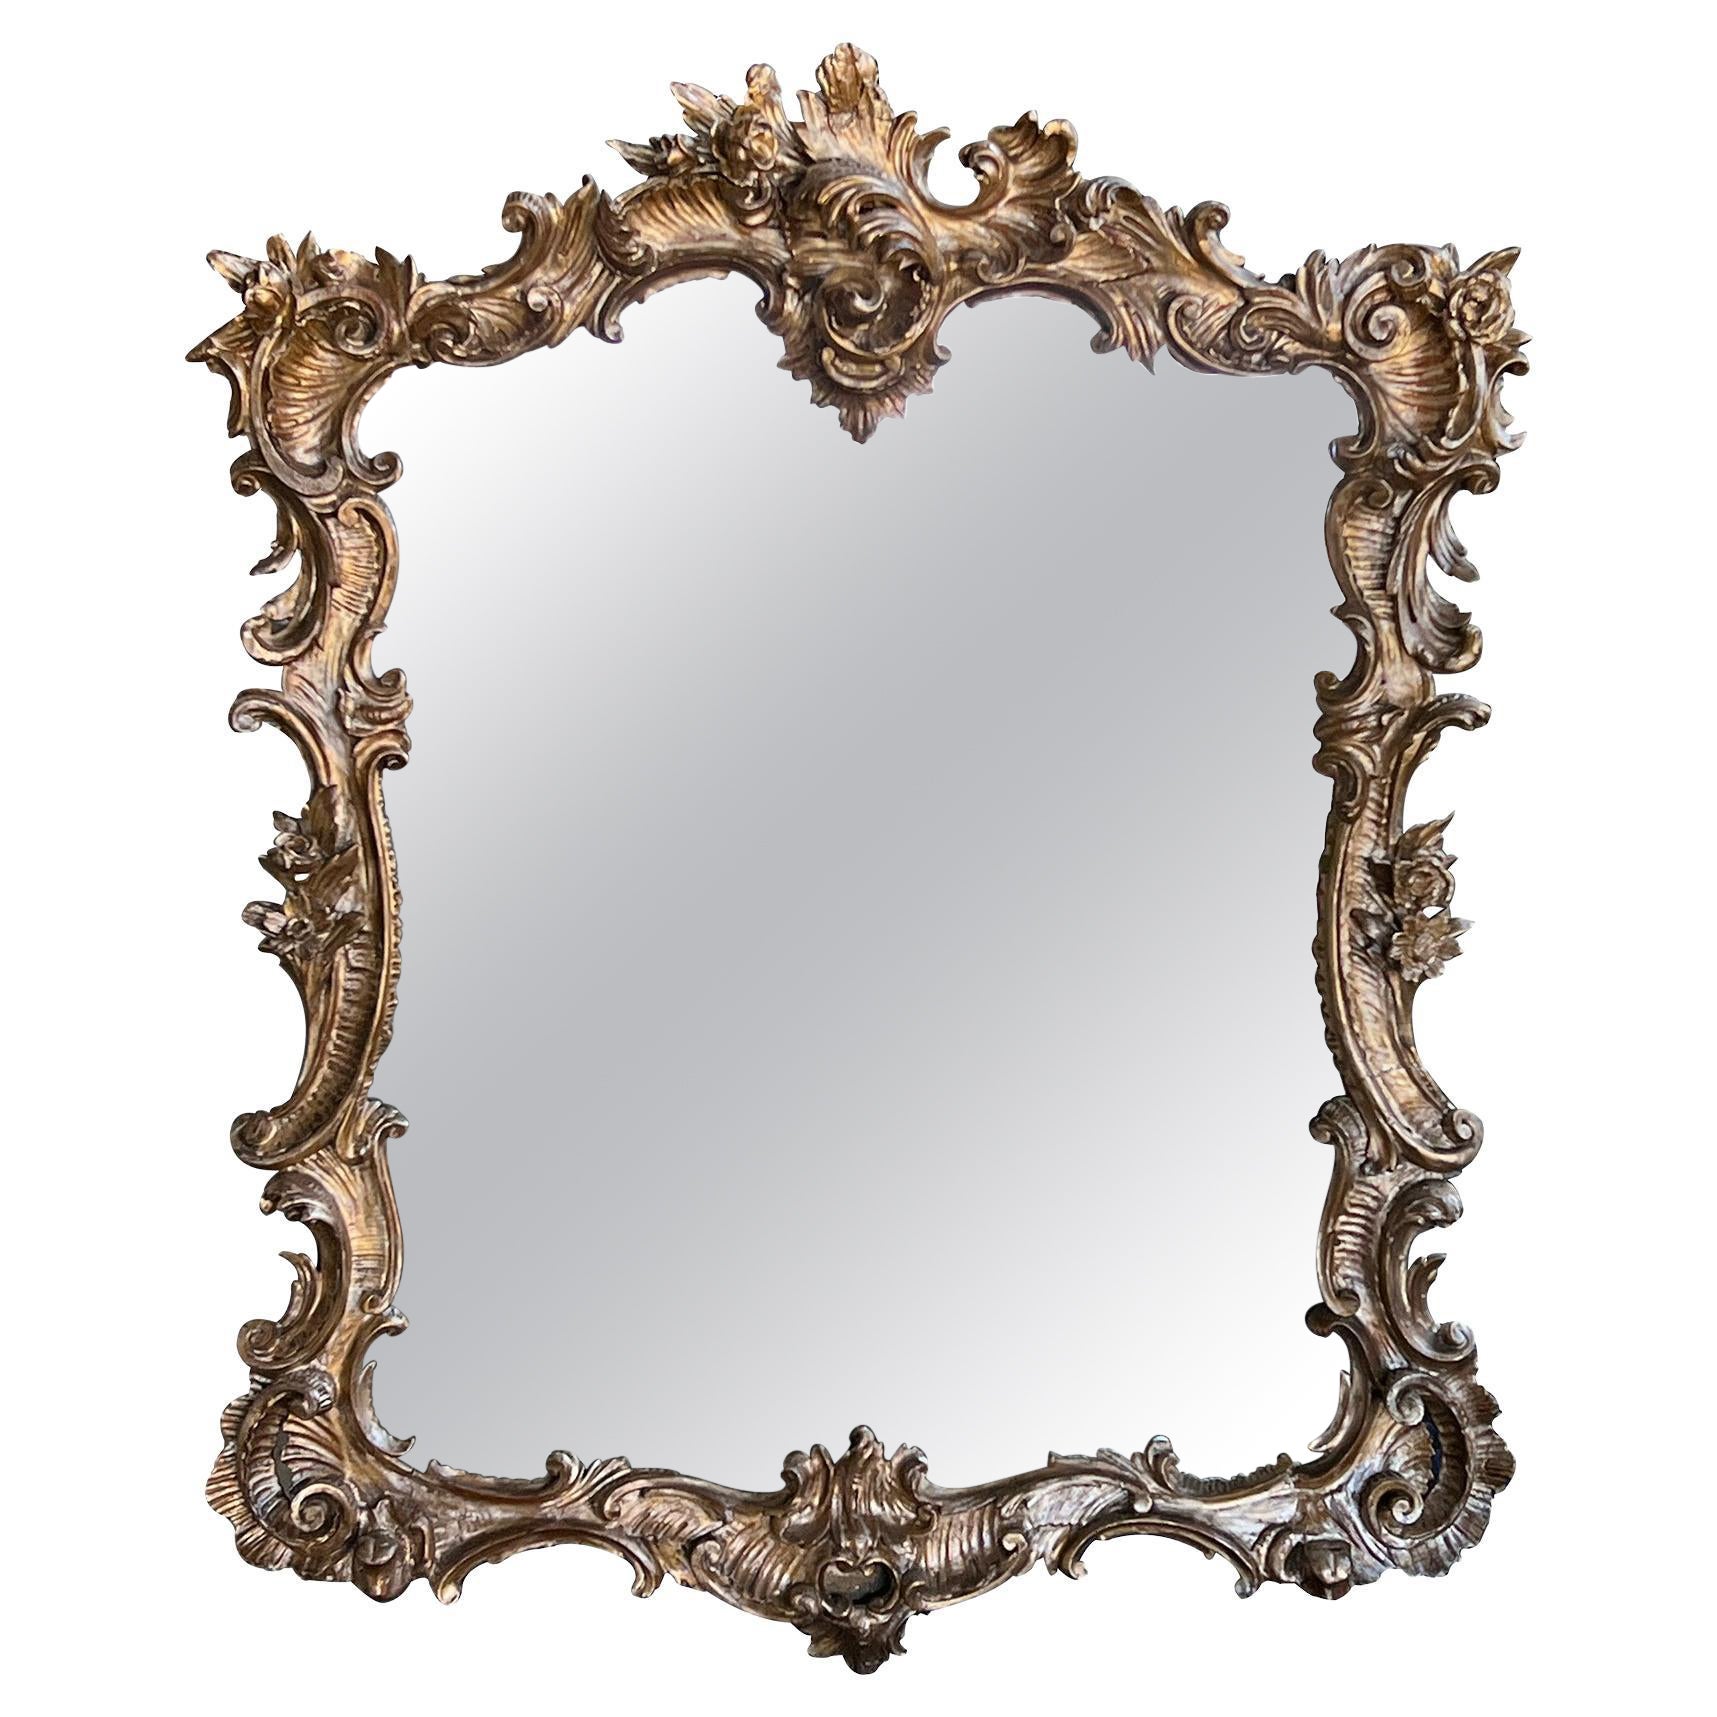 Spiegel aus geschnitztem Giltwood im französischen Rokoko-Stil